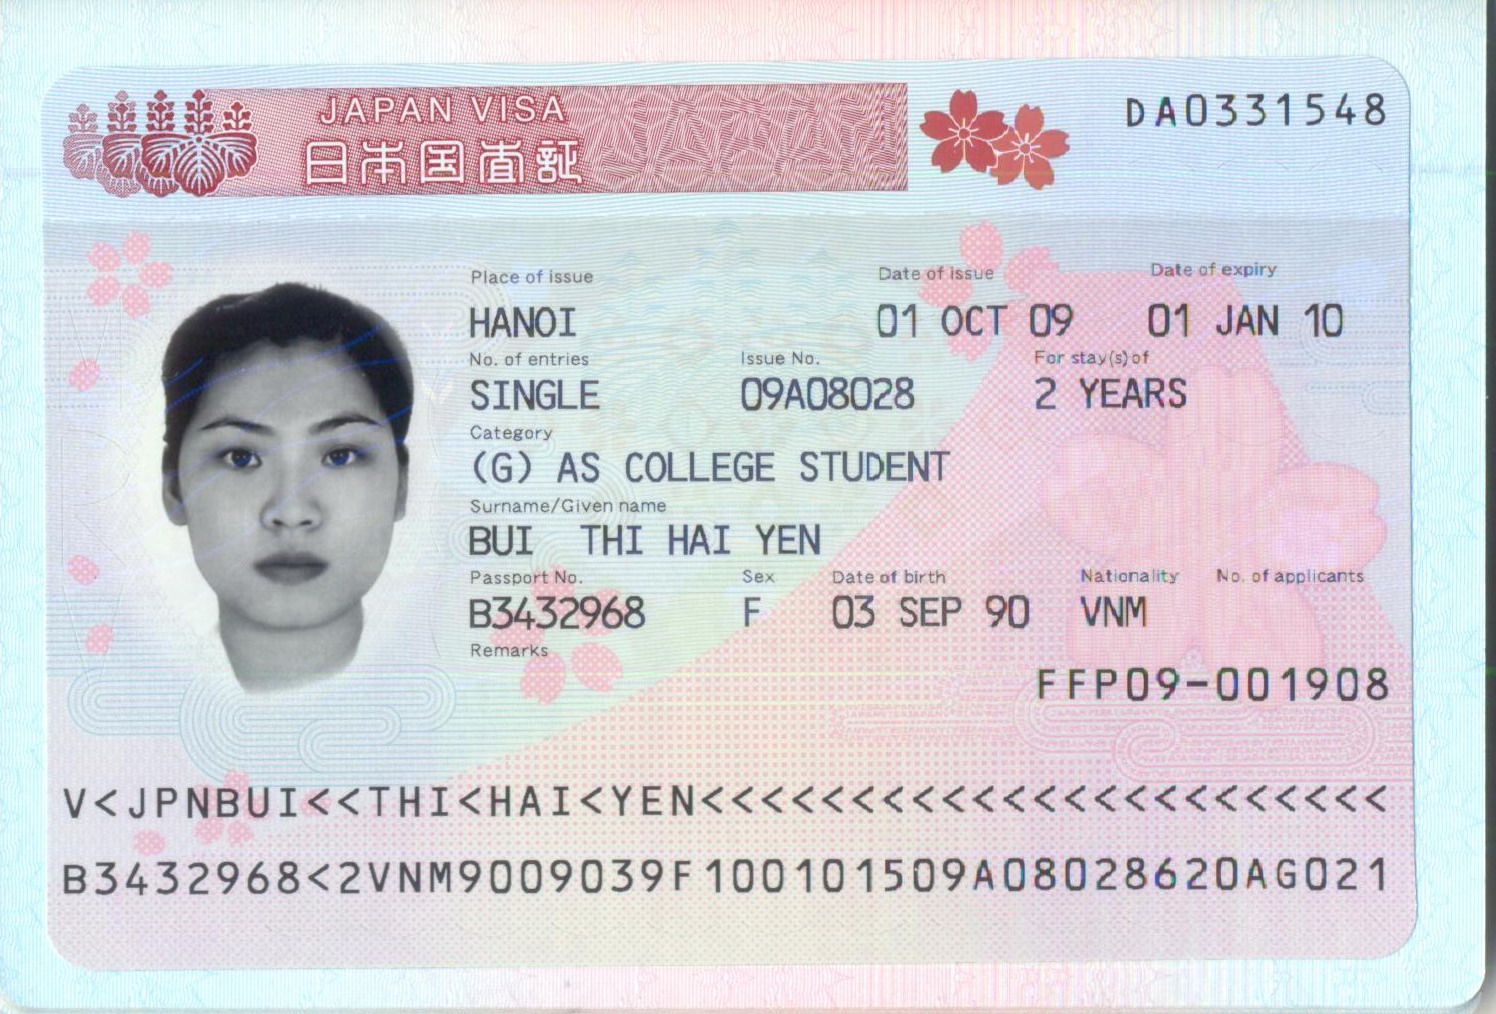 Visa ở Nhật có mấy loại? TTS, DHS sang Nhật thì visa loại gì?